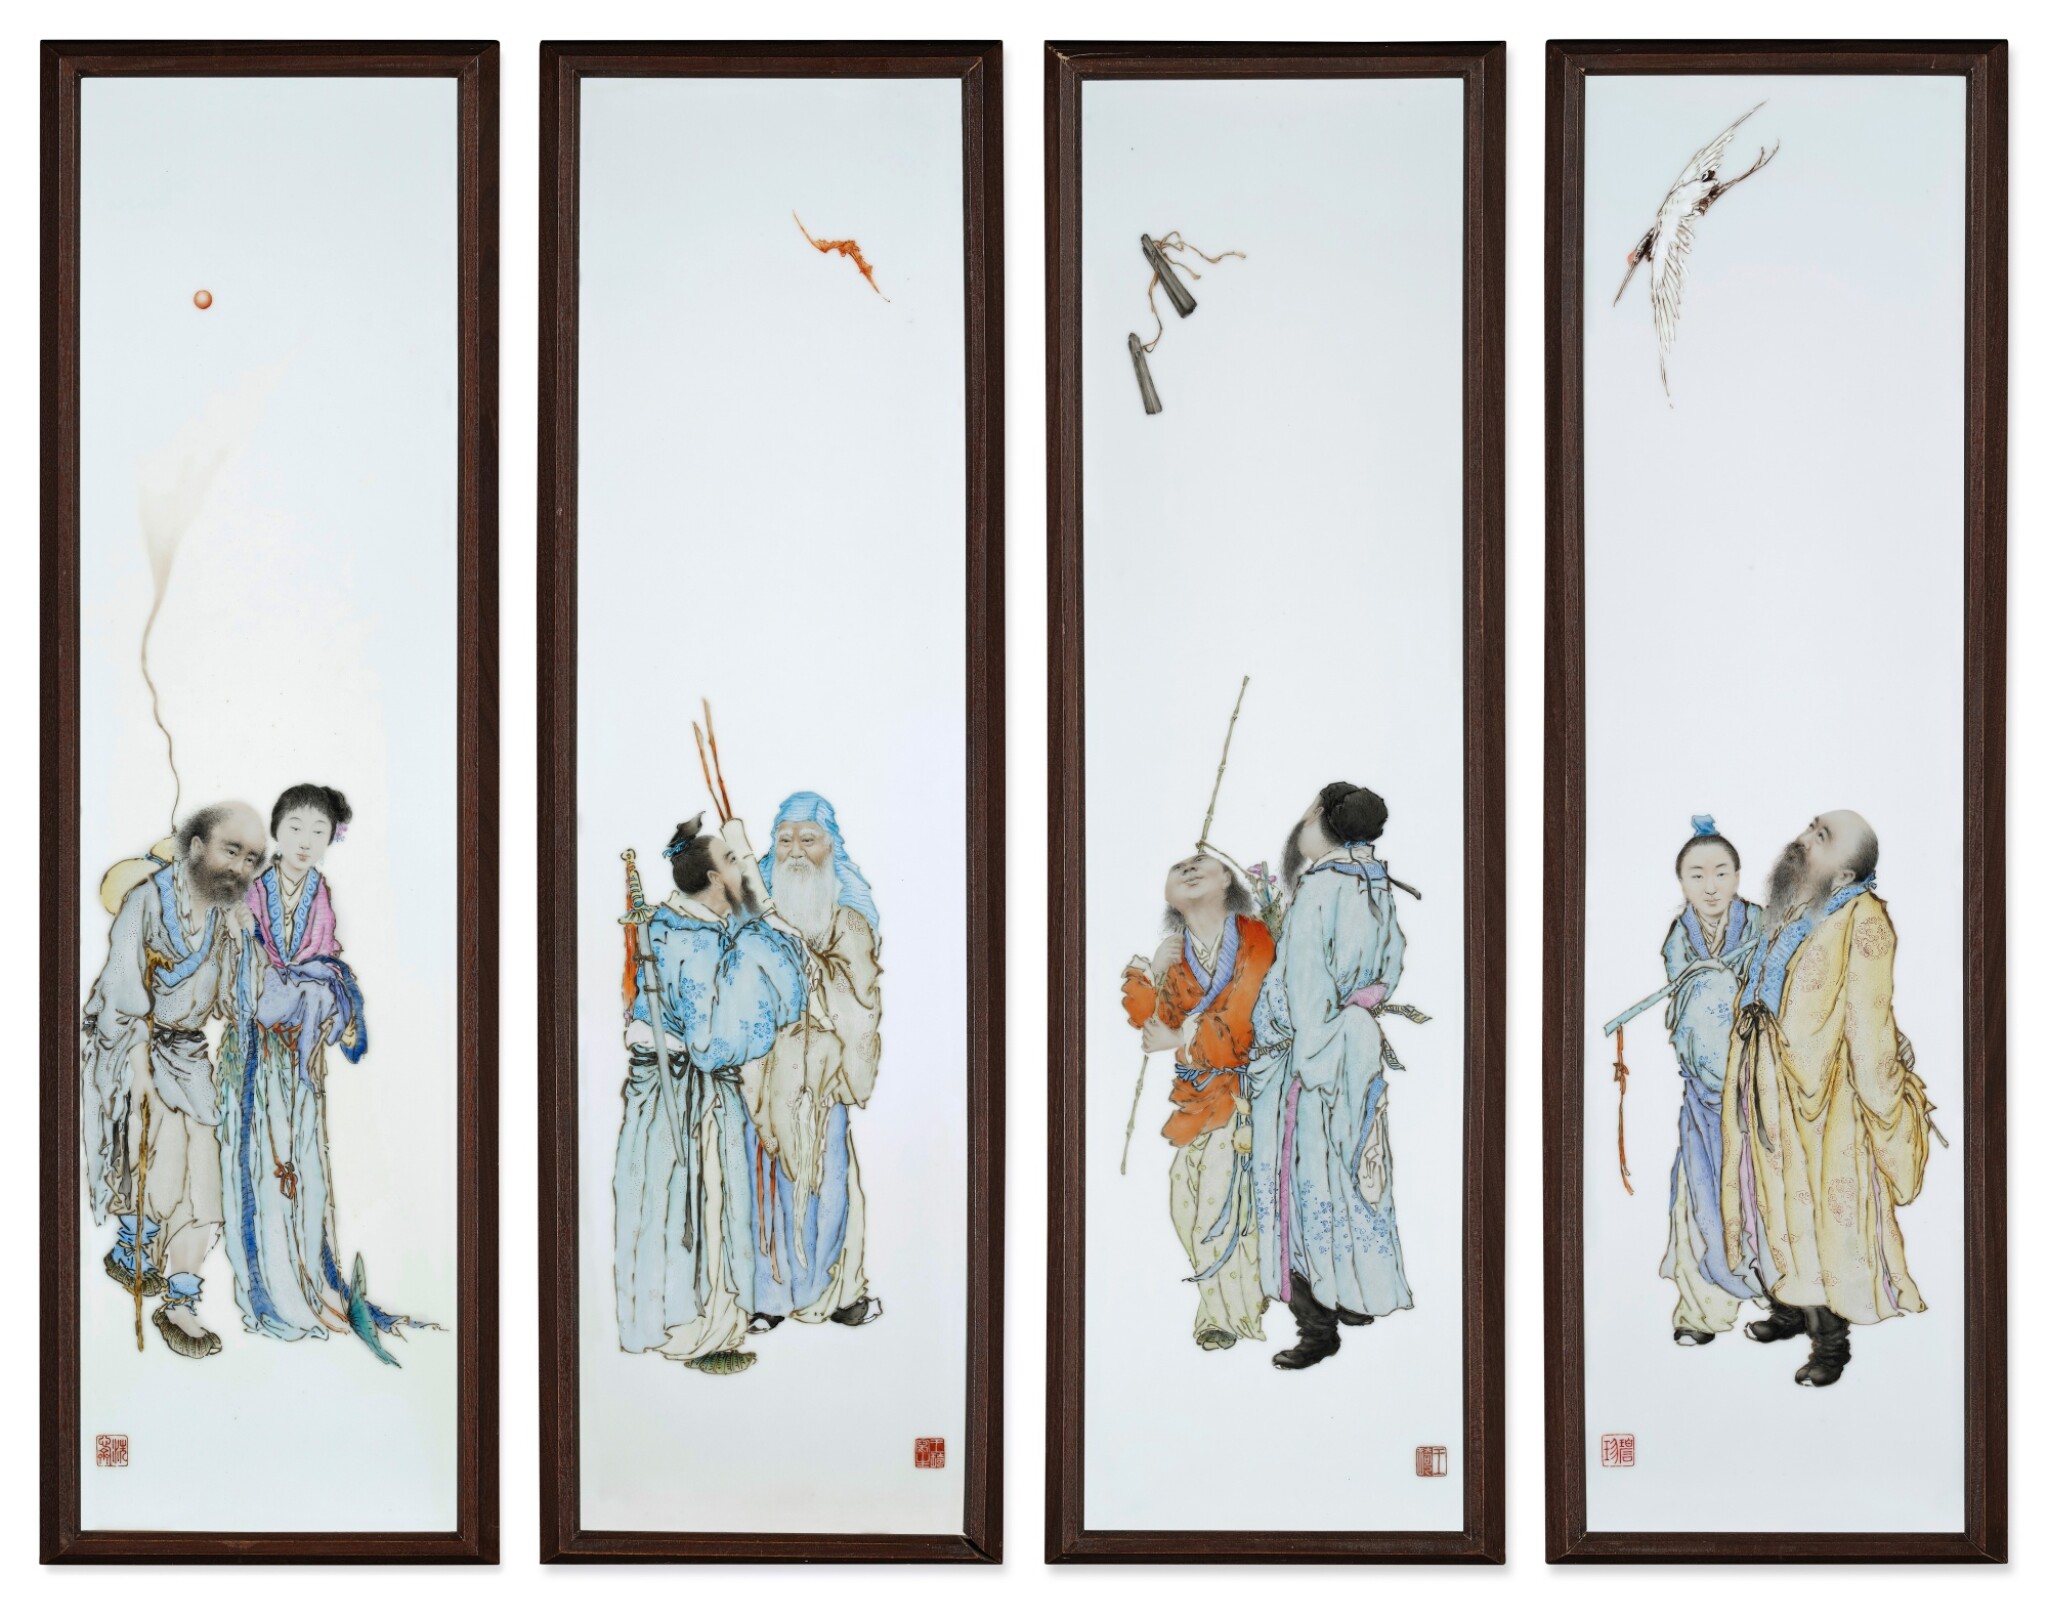  民國 1920年代 王琦作粉彩八仙圖瓷板一套四幅